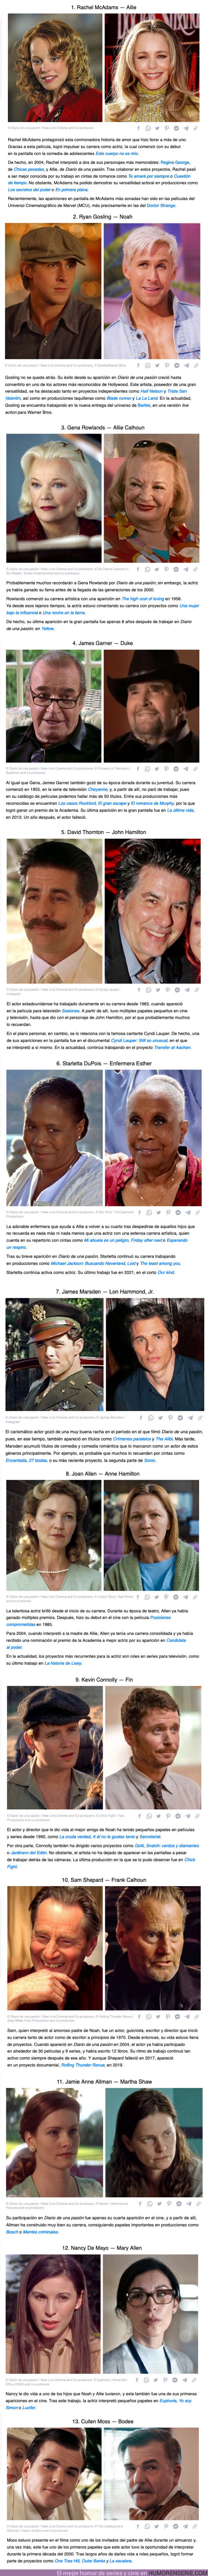 102602 - GALERÍA: Cómo cambiaron 13 actores de “El Diario de Noa” tras contar una de las historias más románticas